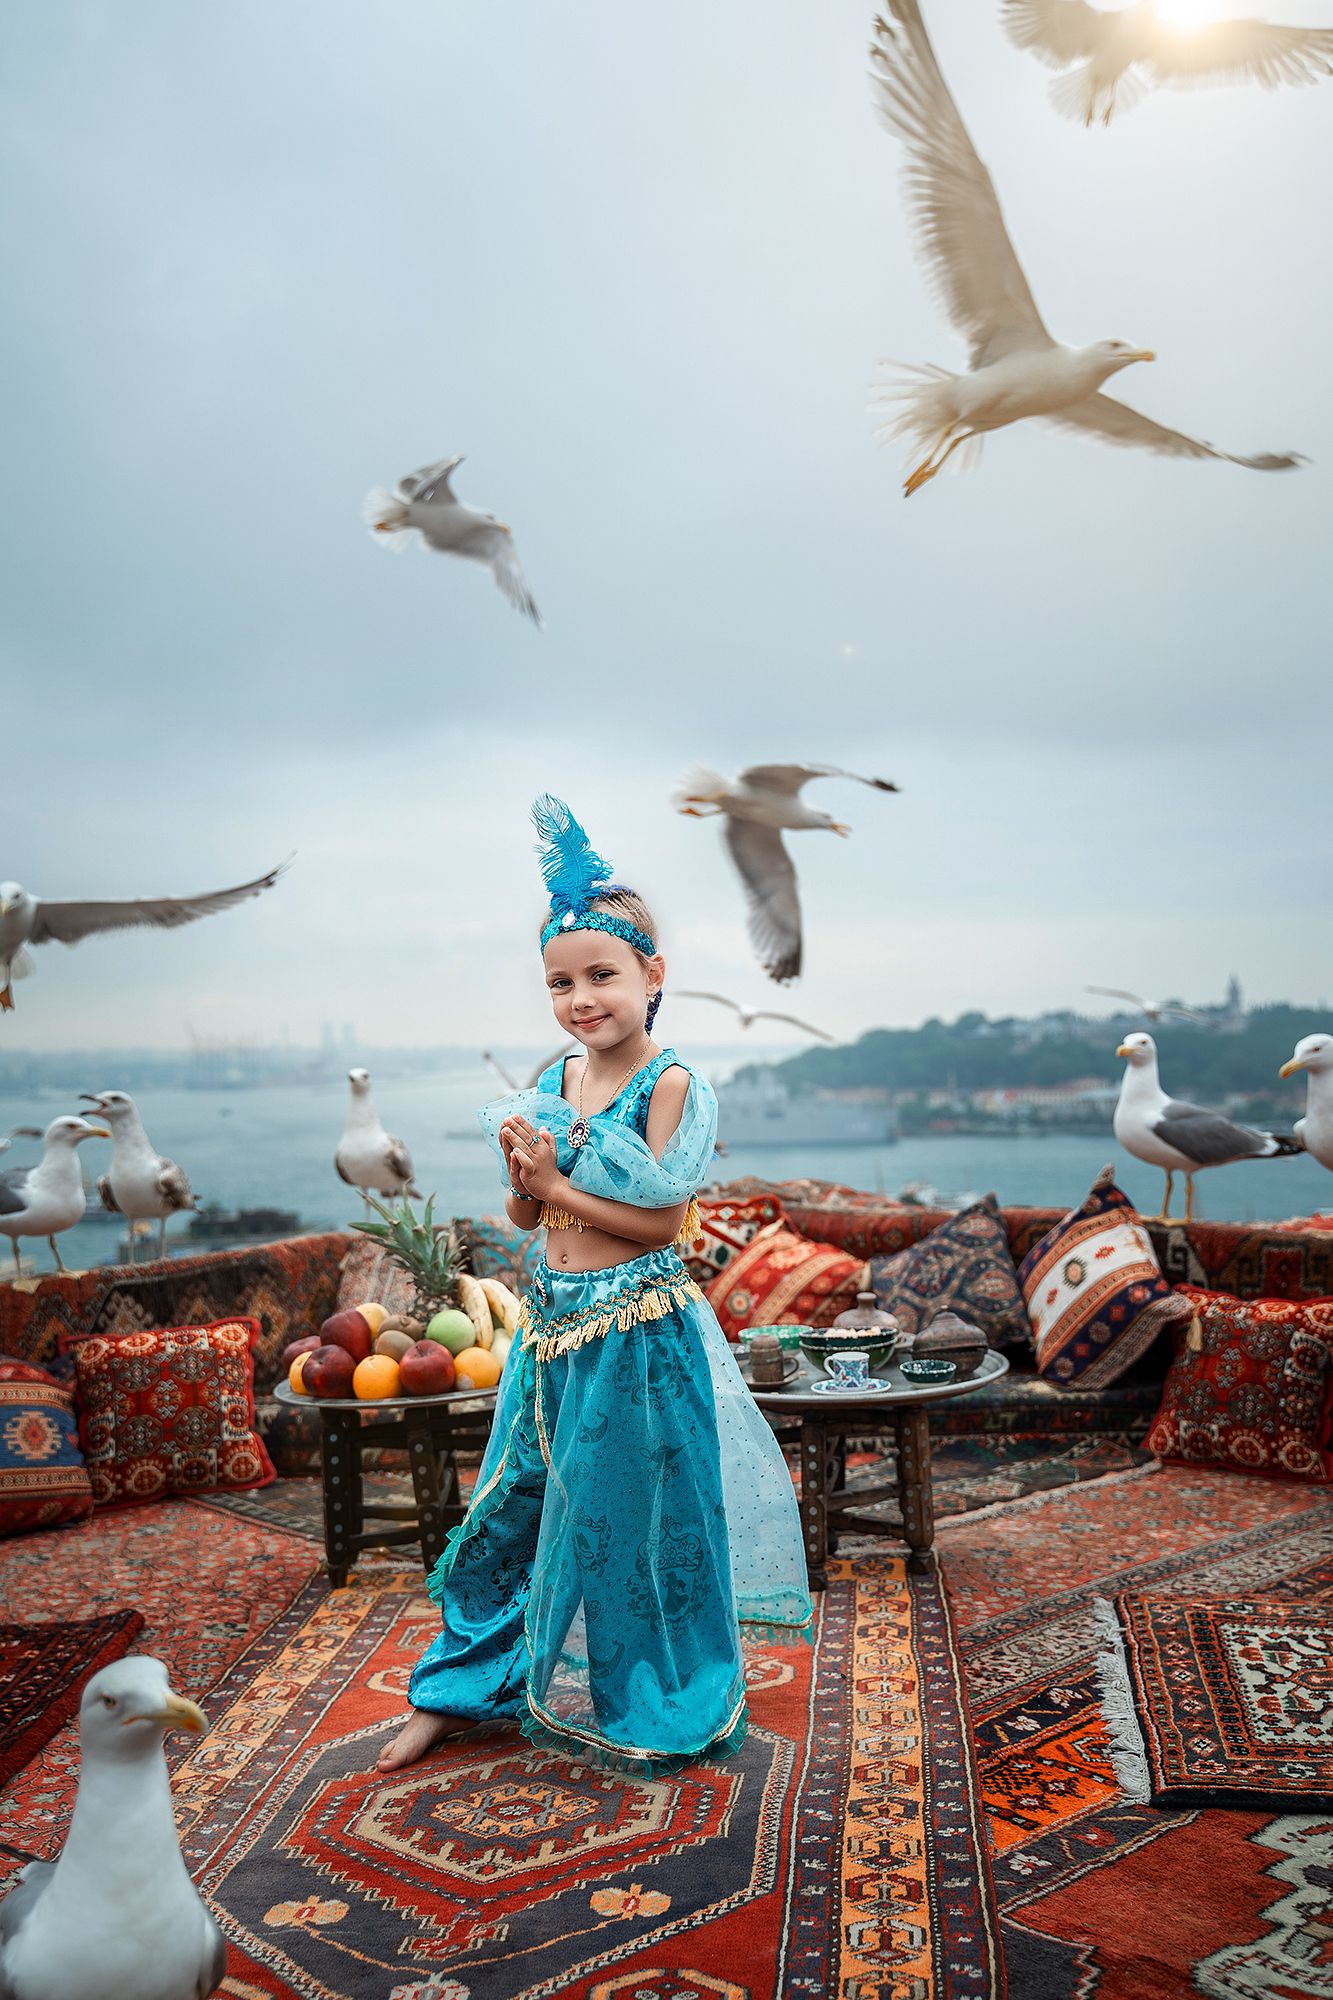 Стамбульские крыши с чайками.. Фотограф Гузенко Анатолий